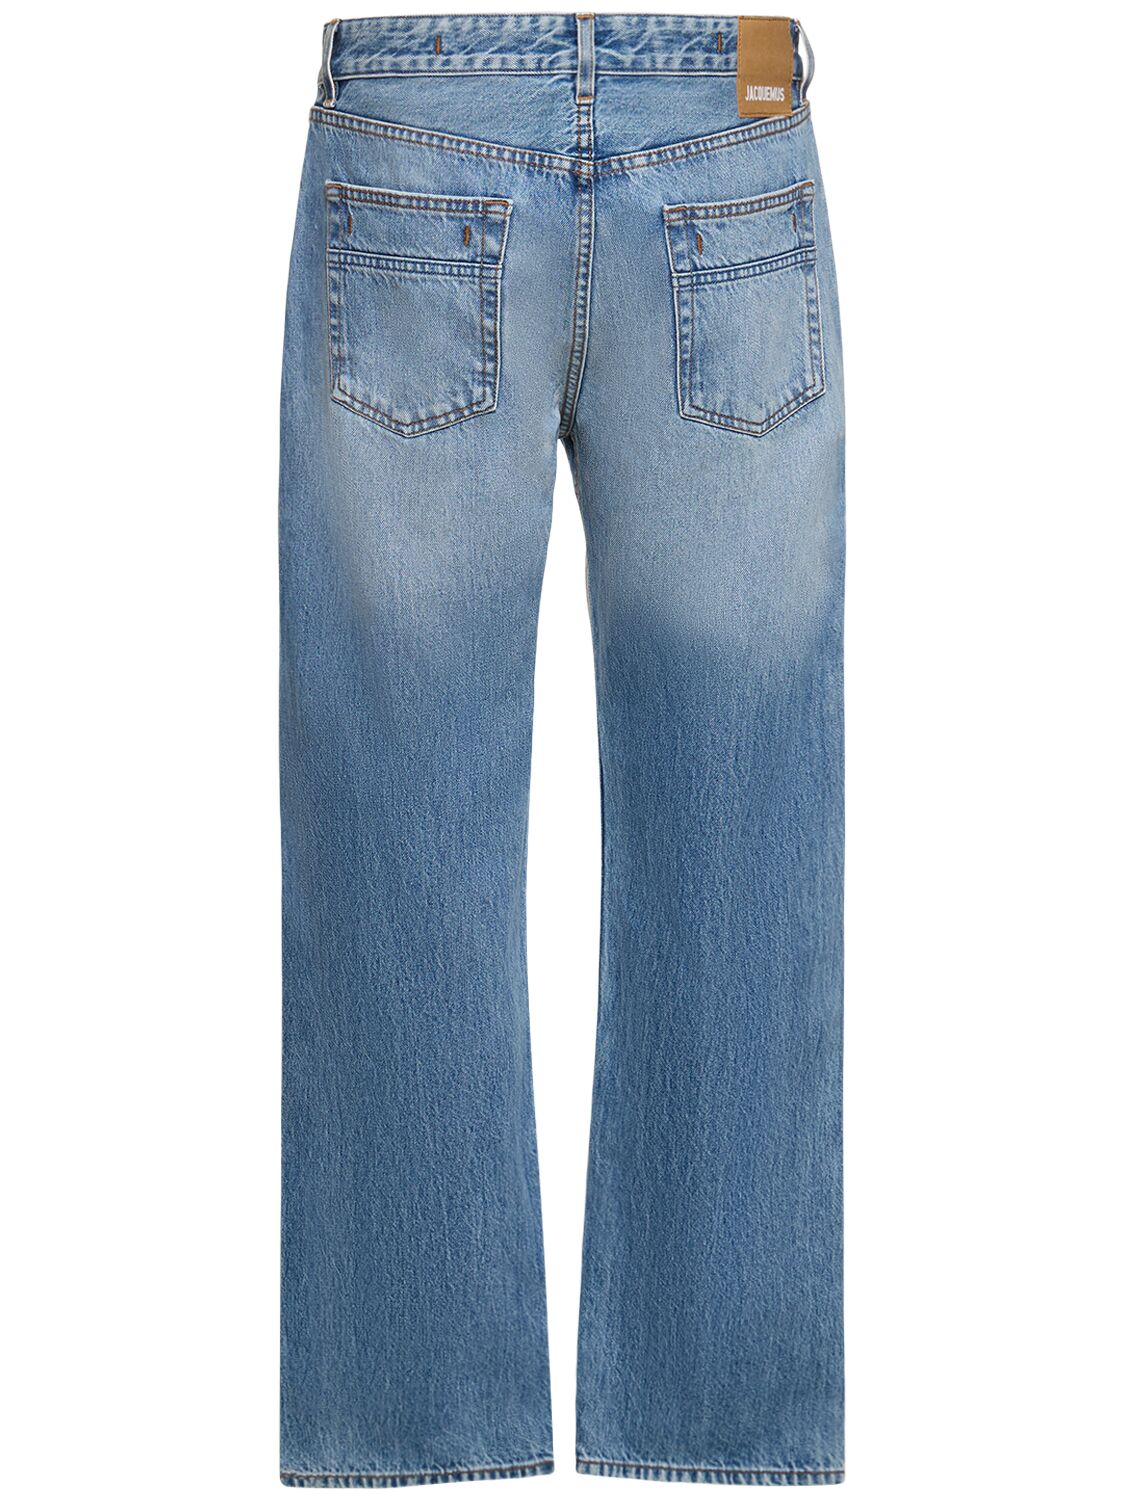 Shop Jacquemus Le De-nimes Fresa Cotton Jeans In Light Blue,taba